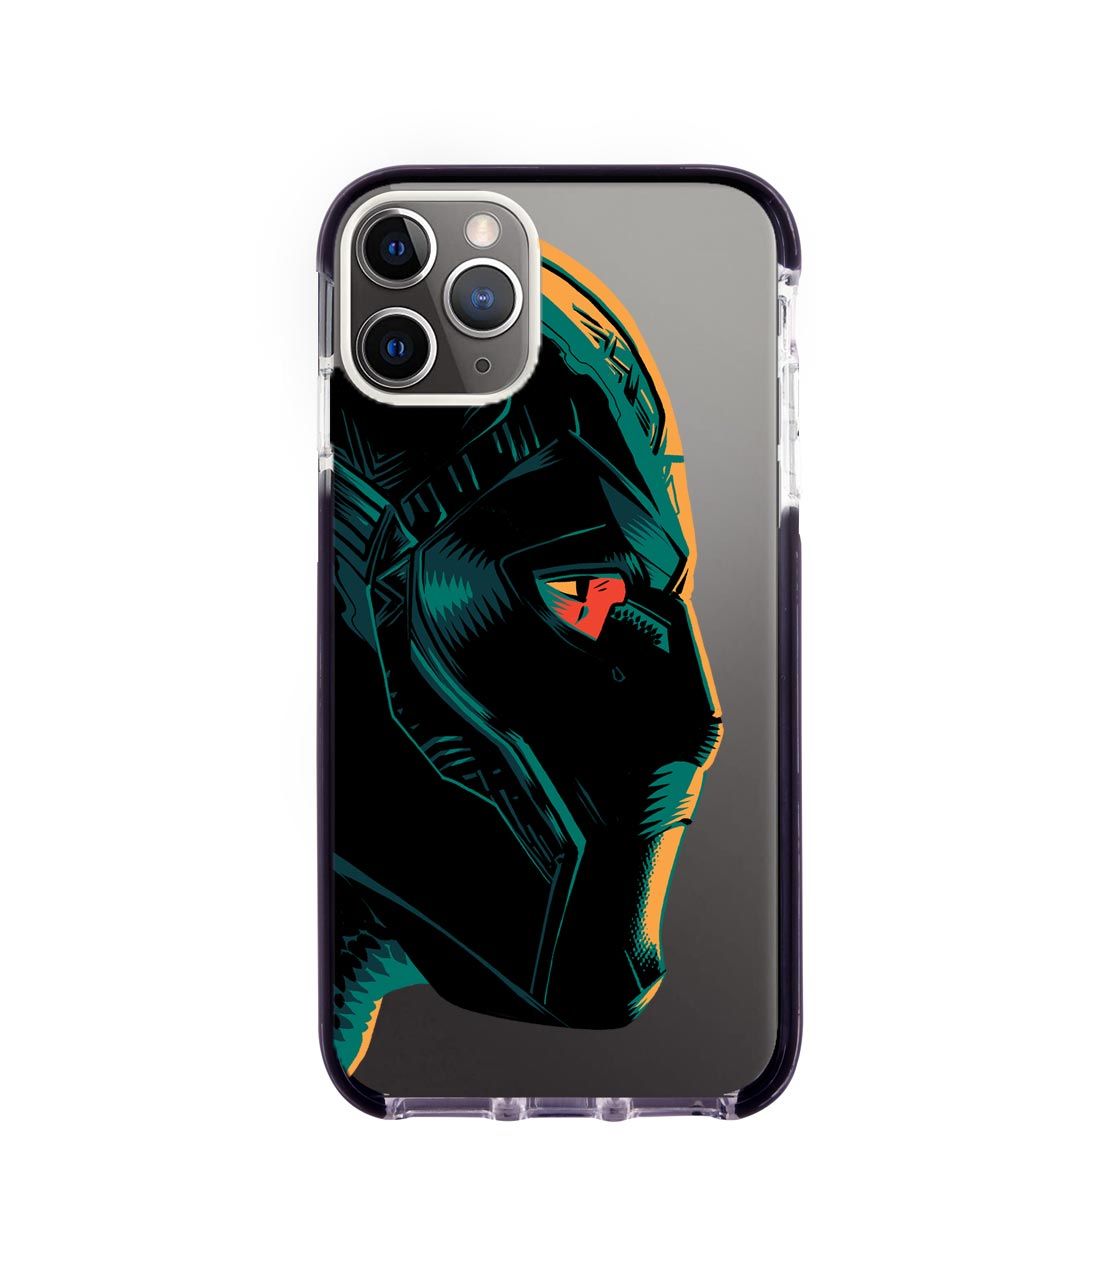 Illuminated Black Panther - Extreme Phone Case for iPhone 11 Pro